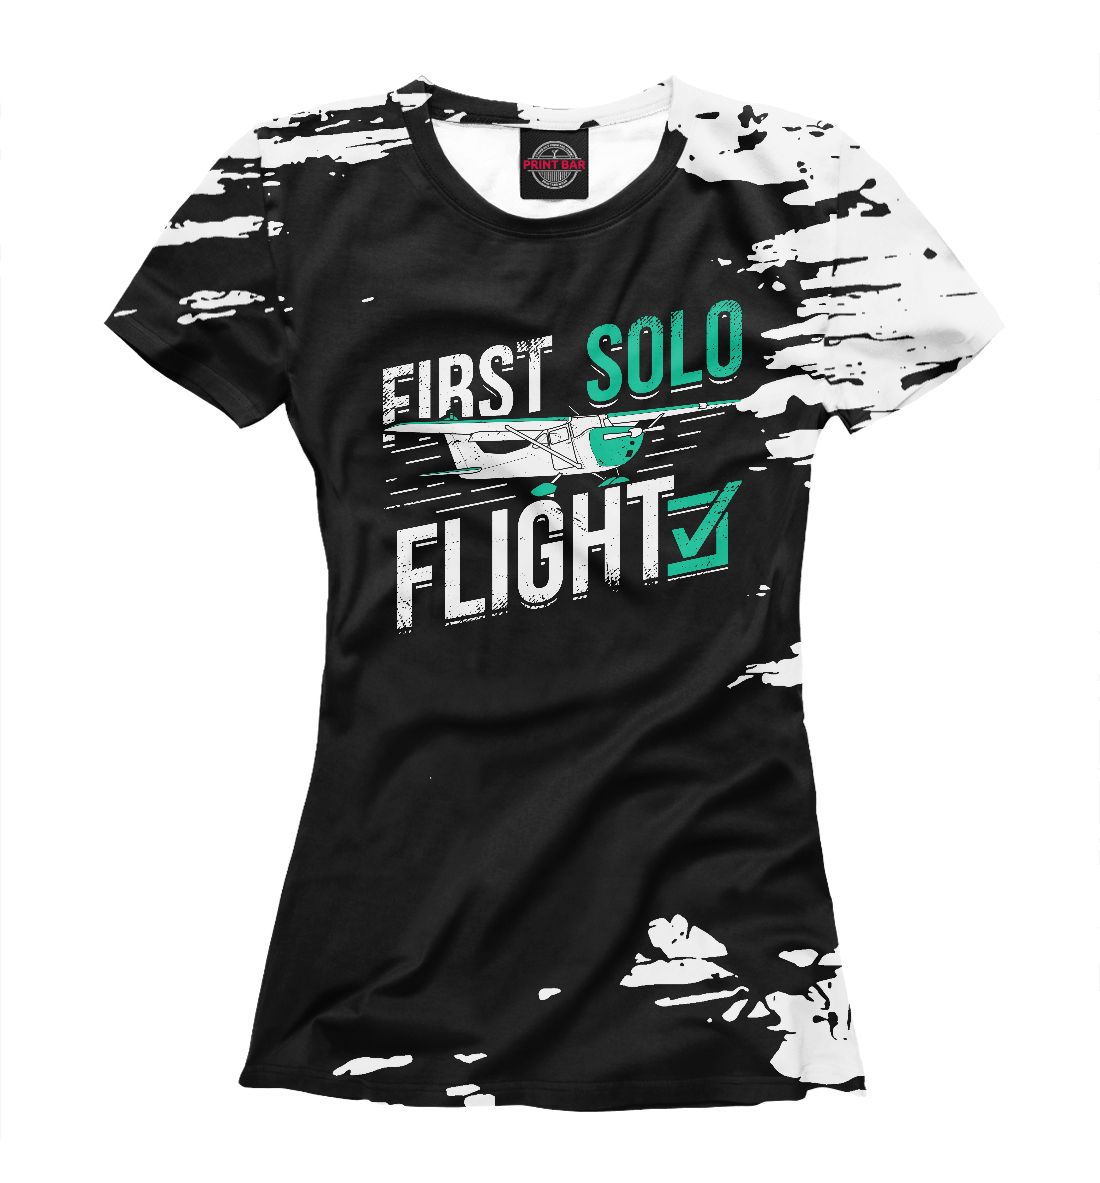 First Solo Flight Pilot first solo flight pilot